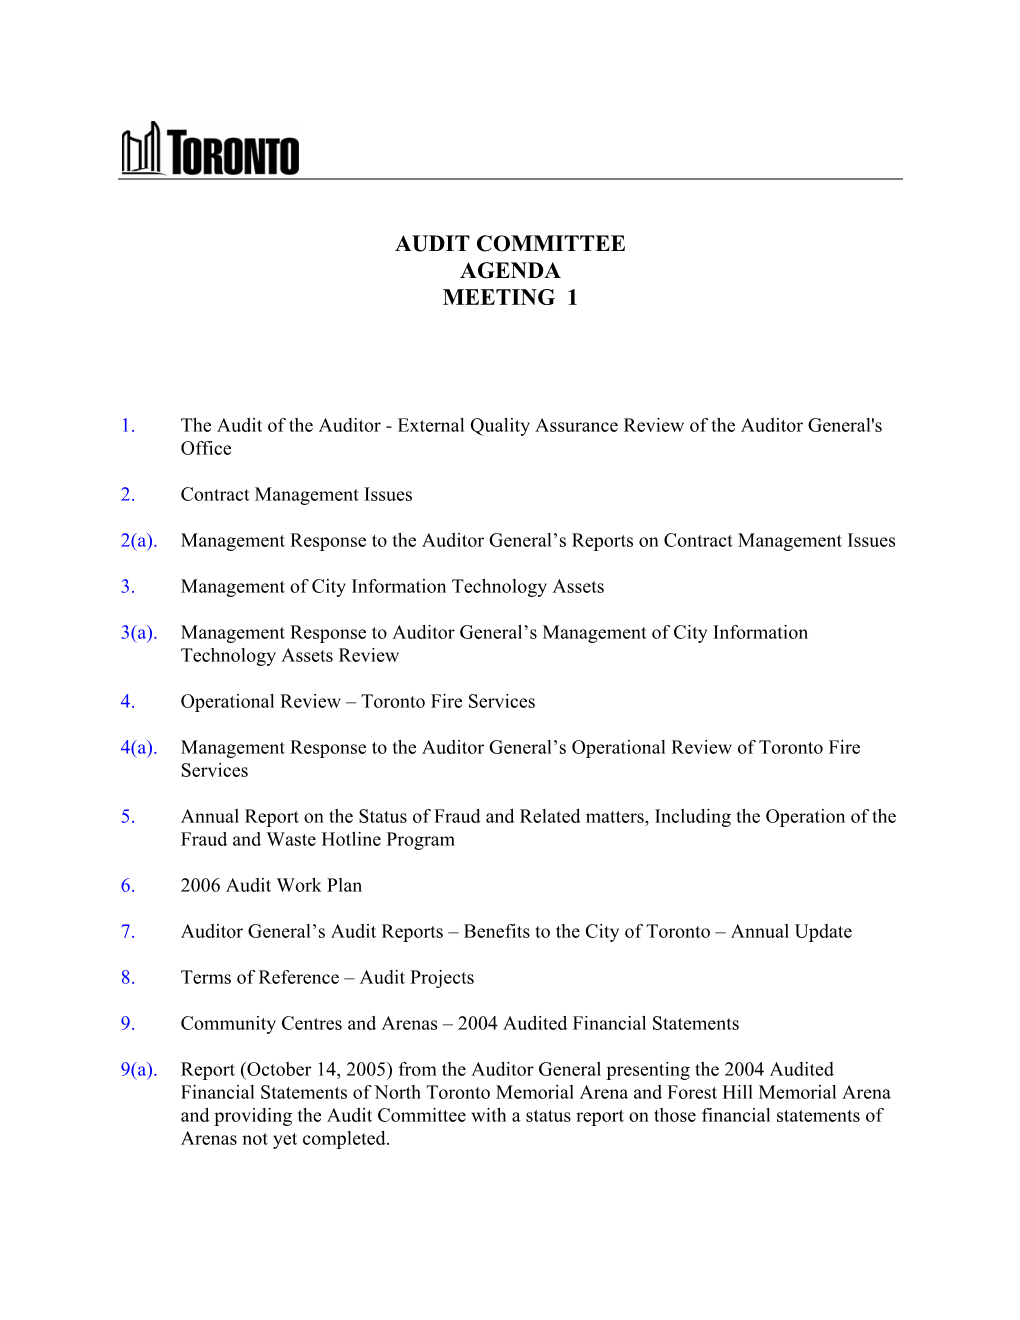 Audit Committee Agenda Meeting 1